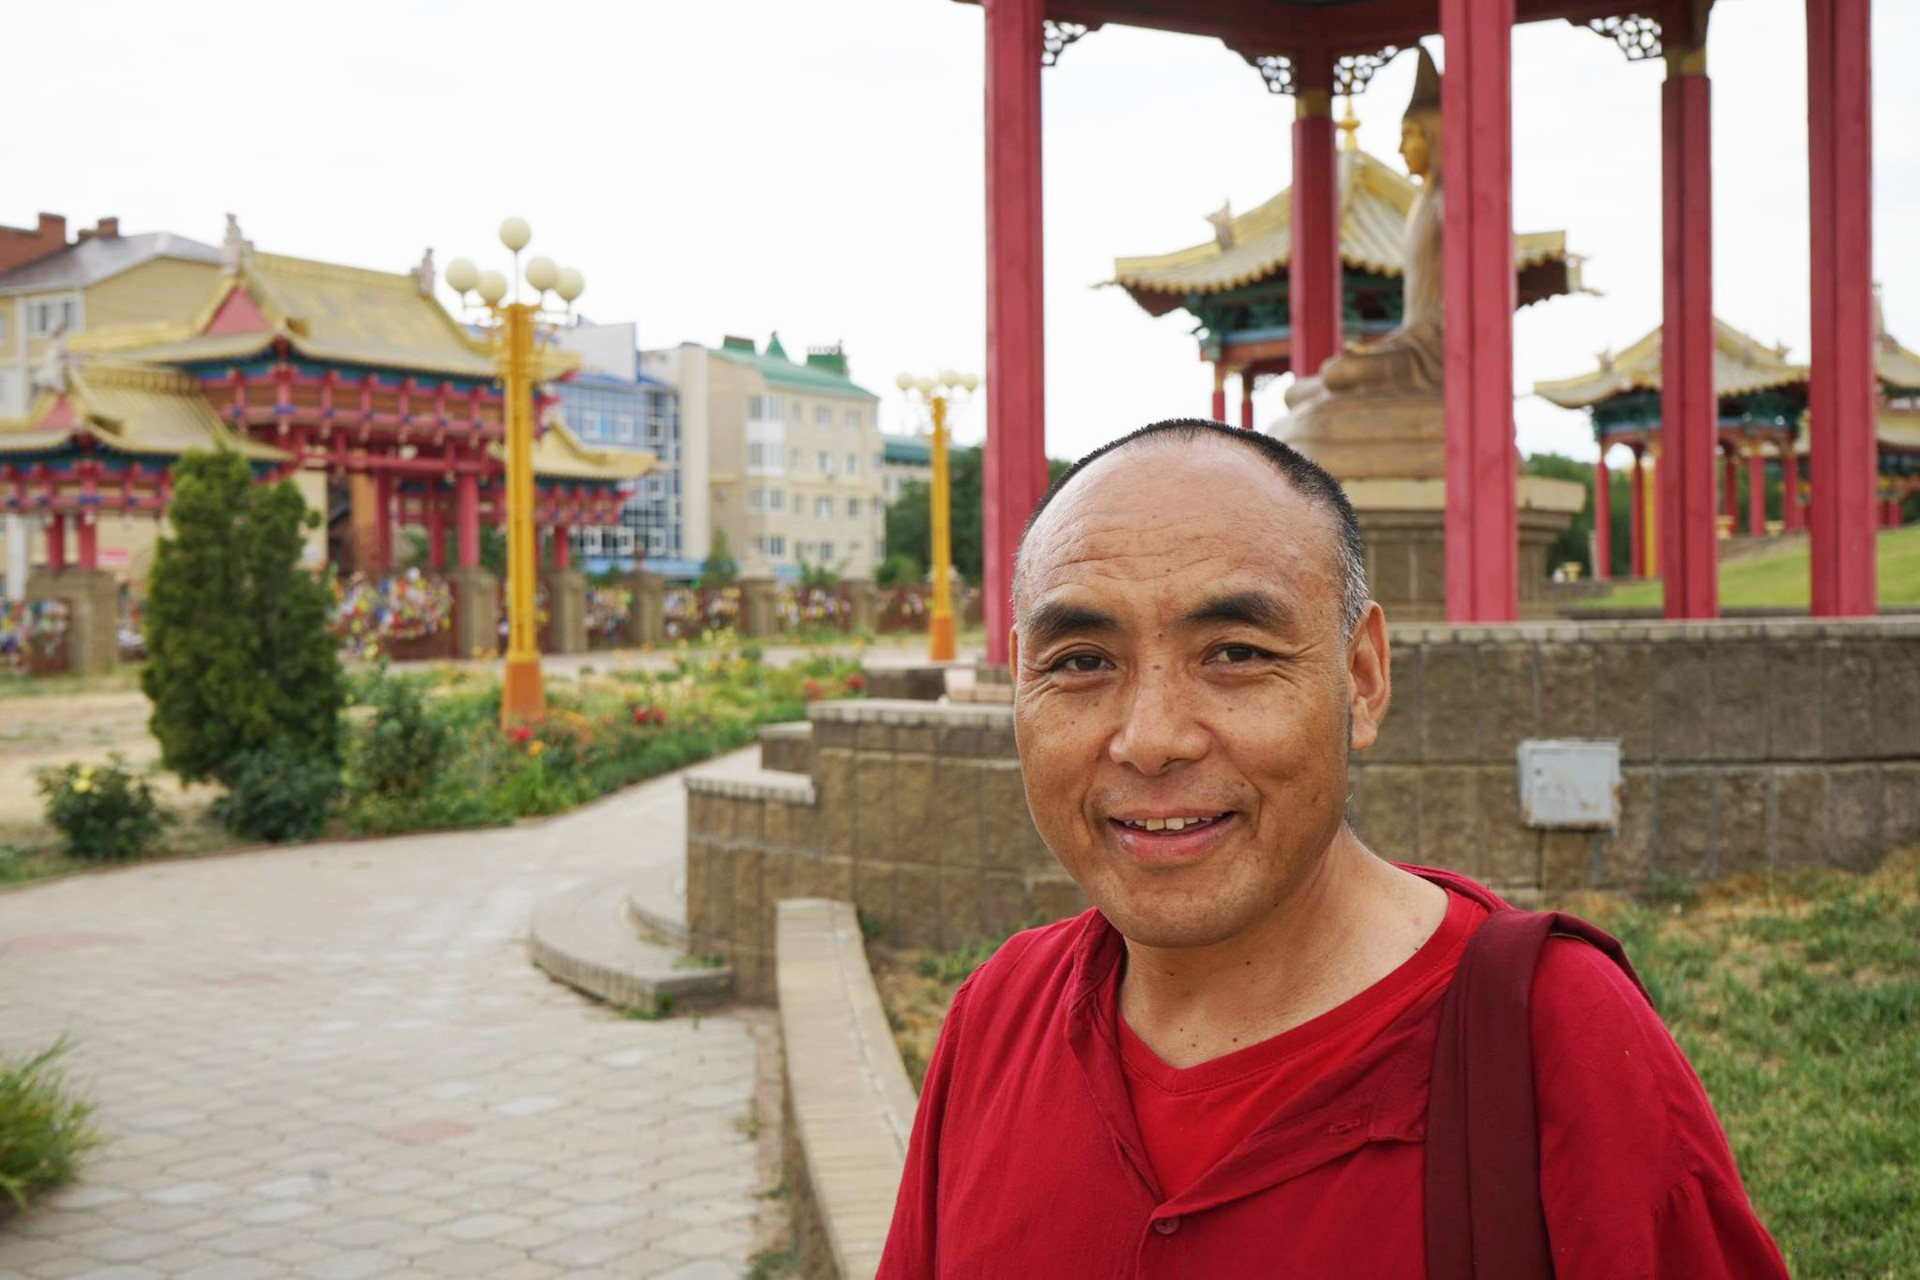 Gen Pen Tso es un monje budista del Tíbet que vive en Kalmukia, en el sur de Rusia, desde 2006, donde trabaja en uno de los templos locales. Ahora habla ruso y kalmuko con fluidez. También es dueño de su propio santuario y de una parroquia en la región de Volgogrado.